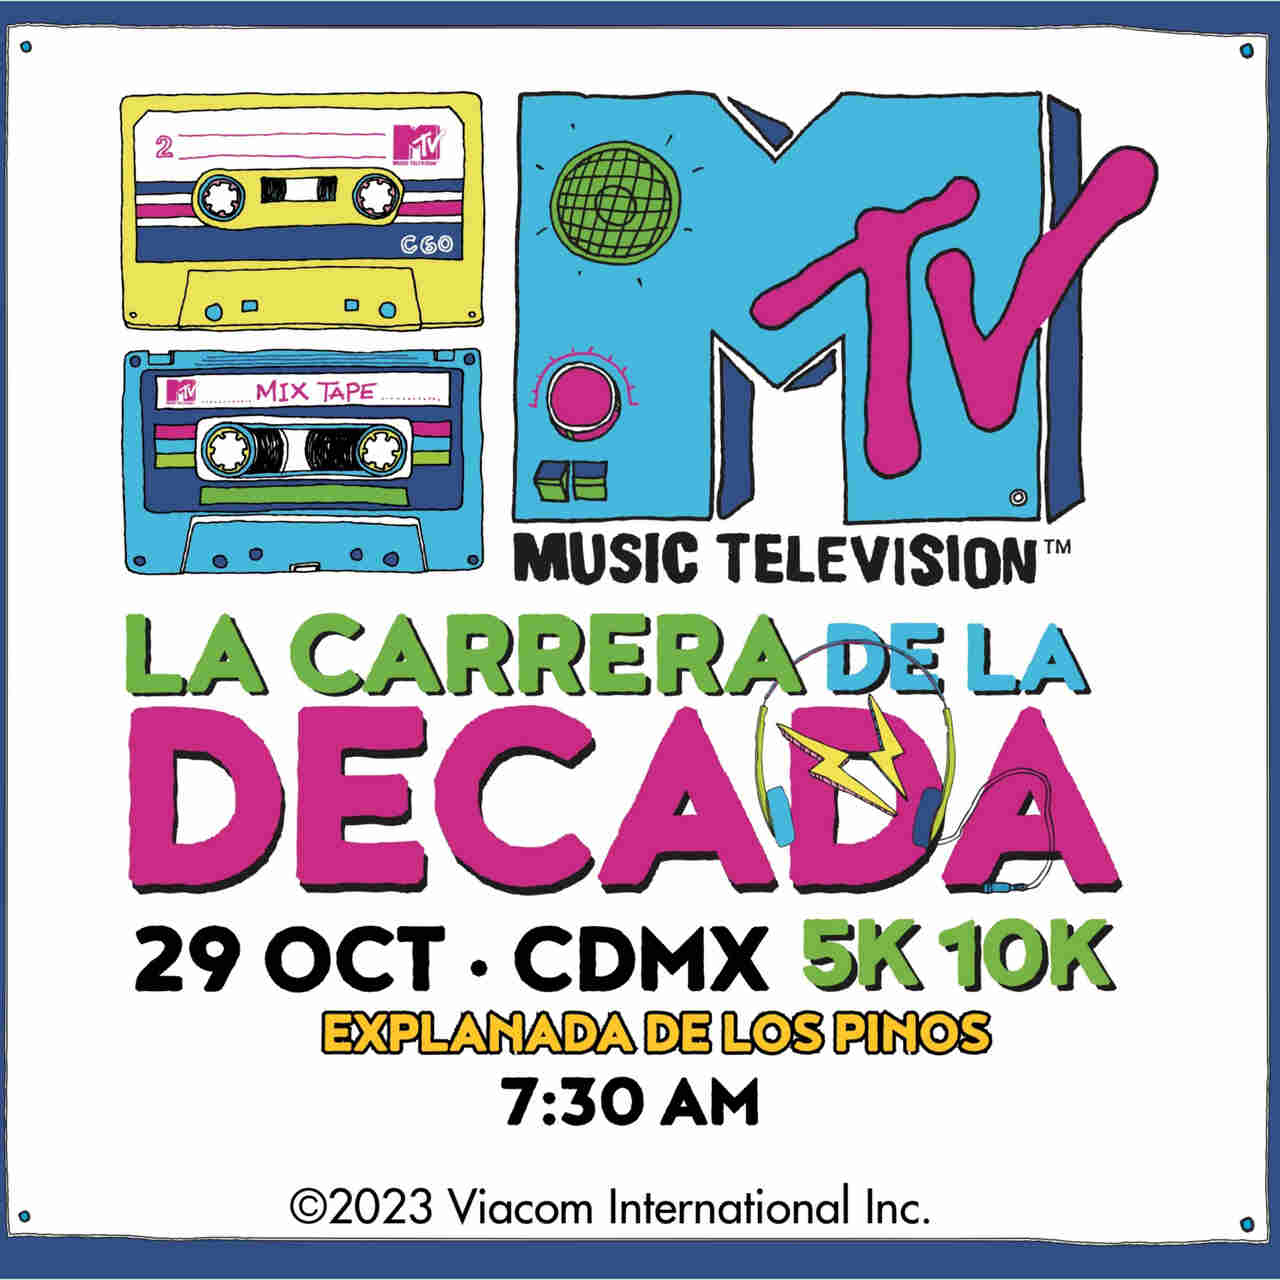 La Carrera de la Década de MTV llega CDMX